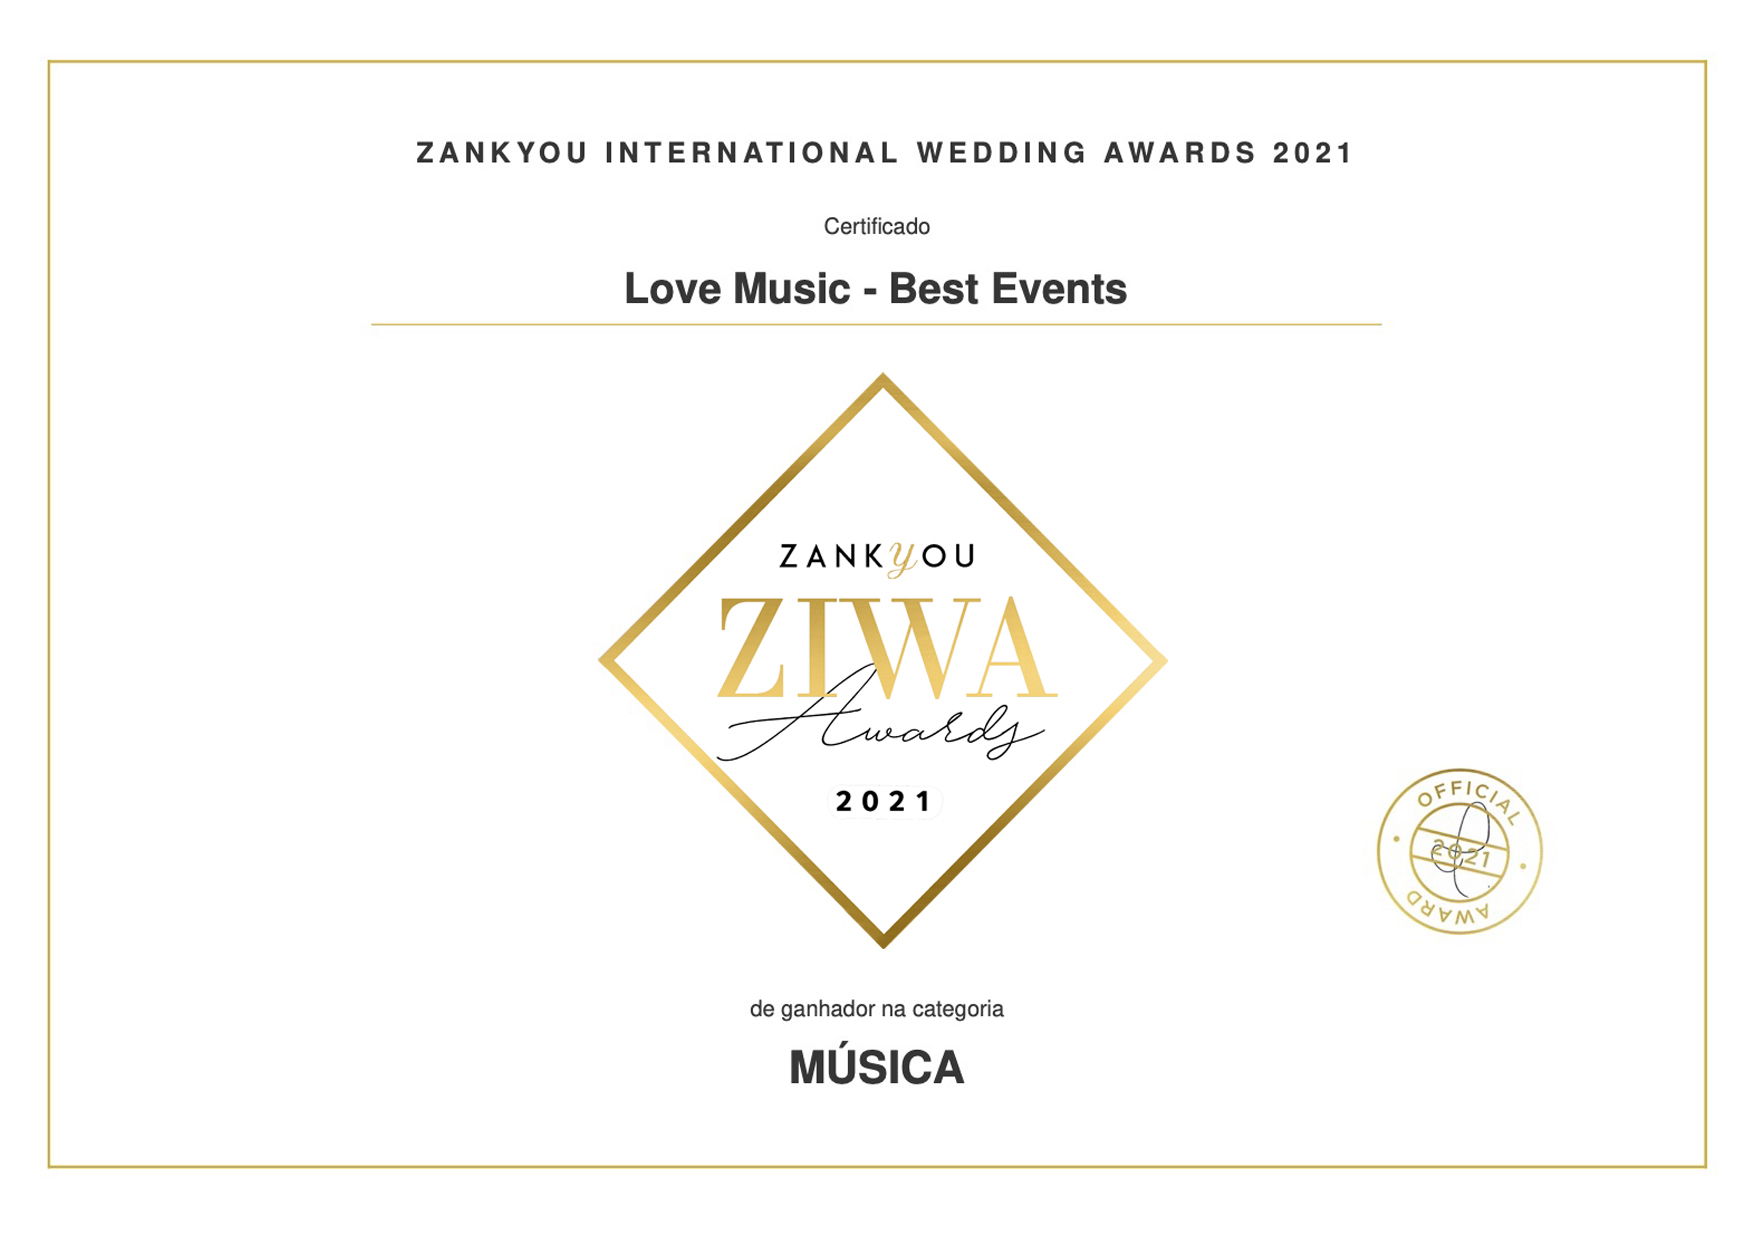 Ziwa Awards 2021 | Love Music - Best Events | Zankyou.pt 🏆